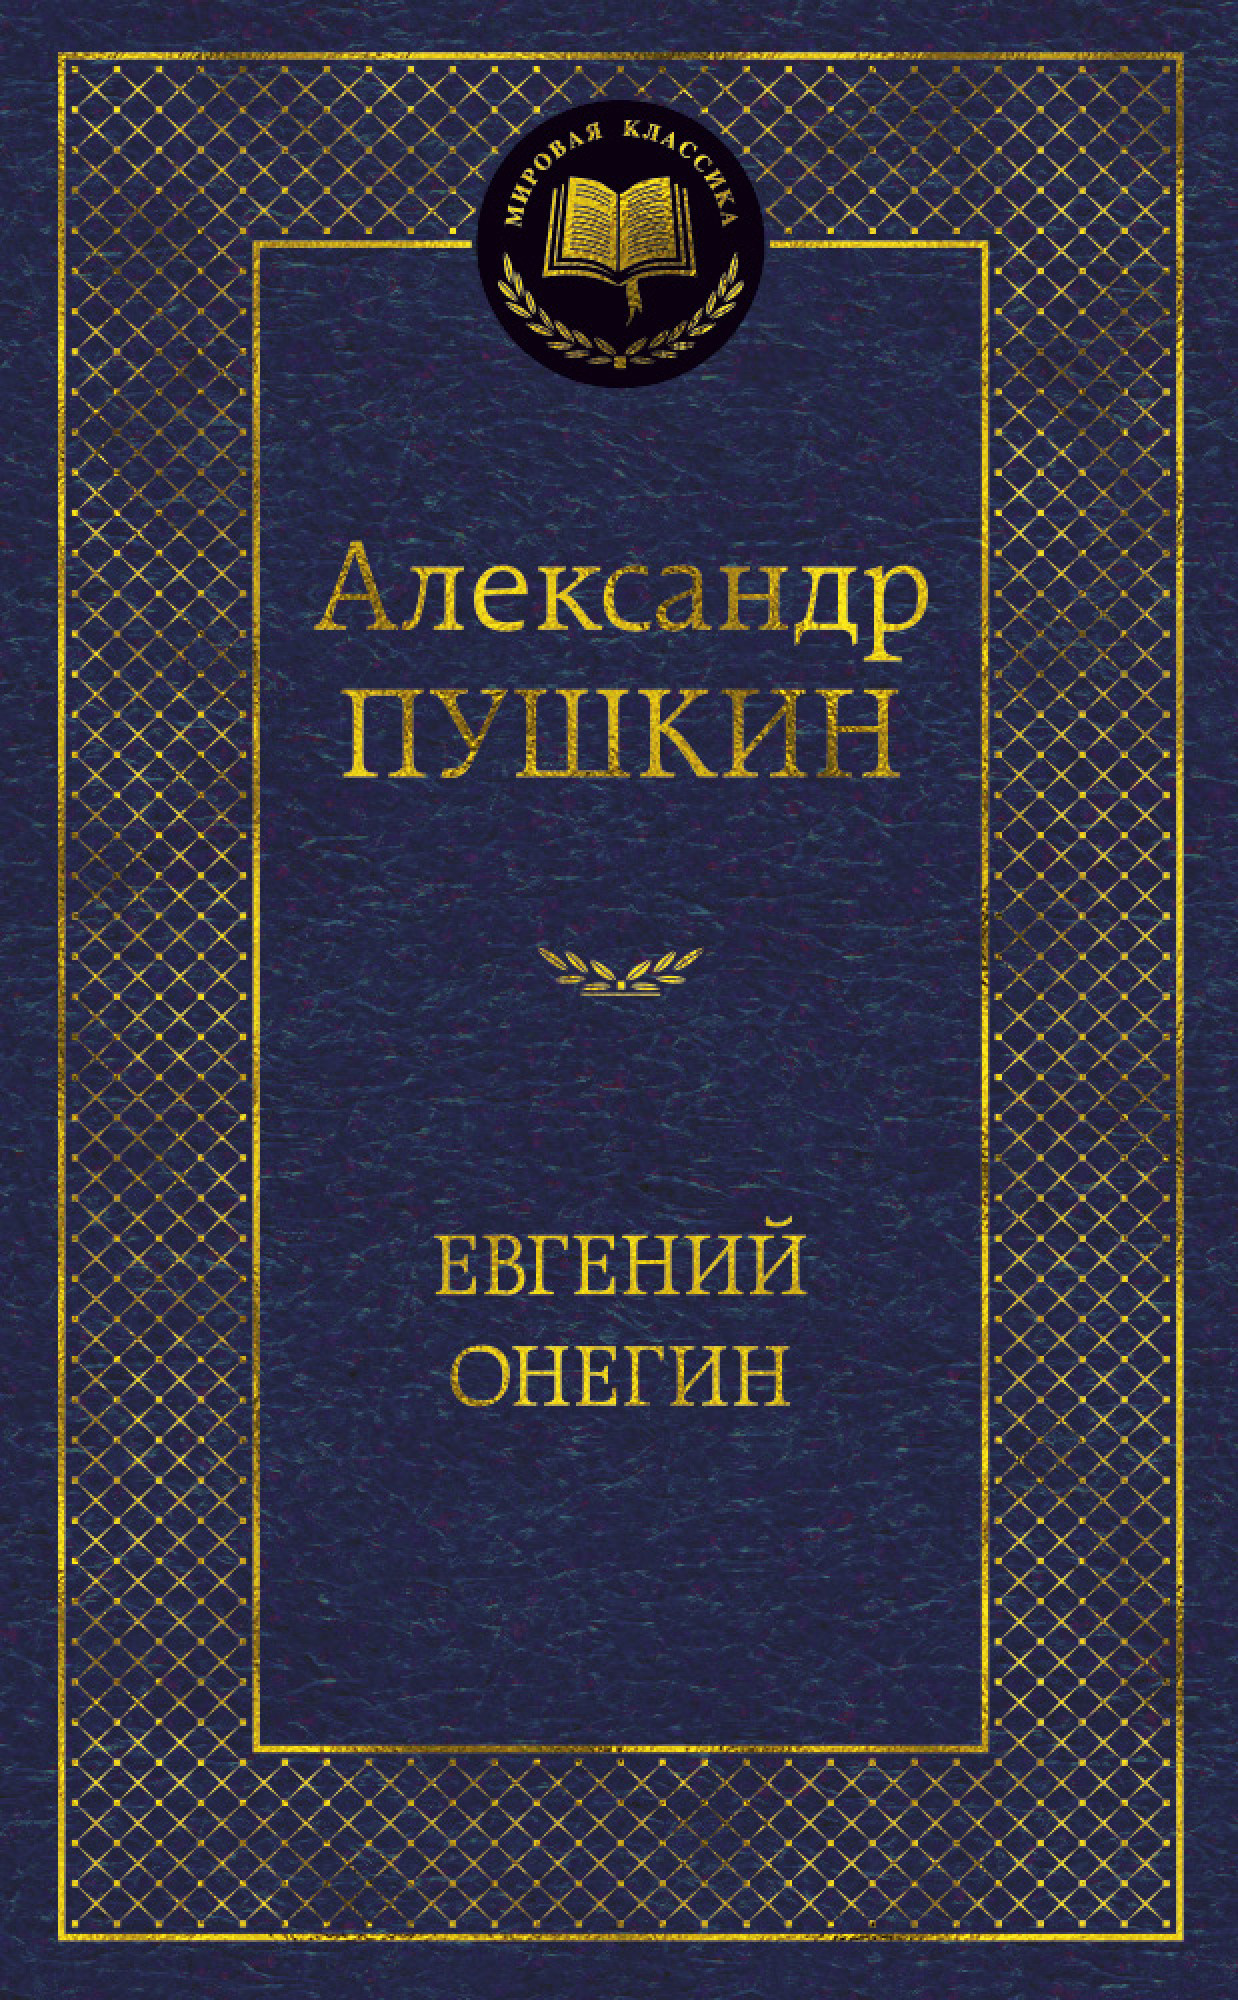 Евгений Онегин. Автор — Александр Пушкин. 